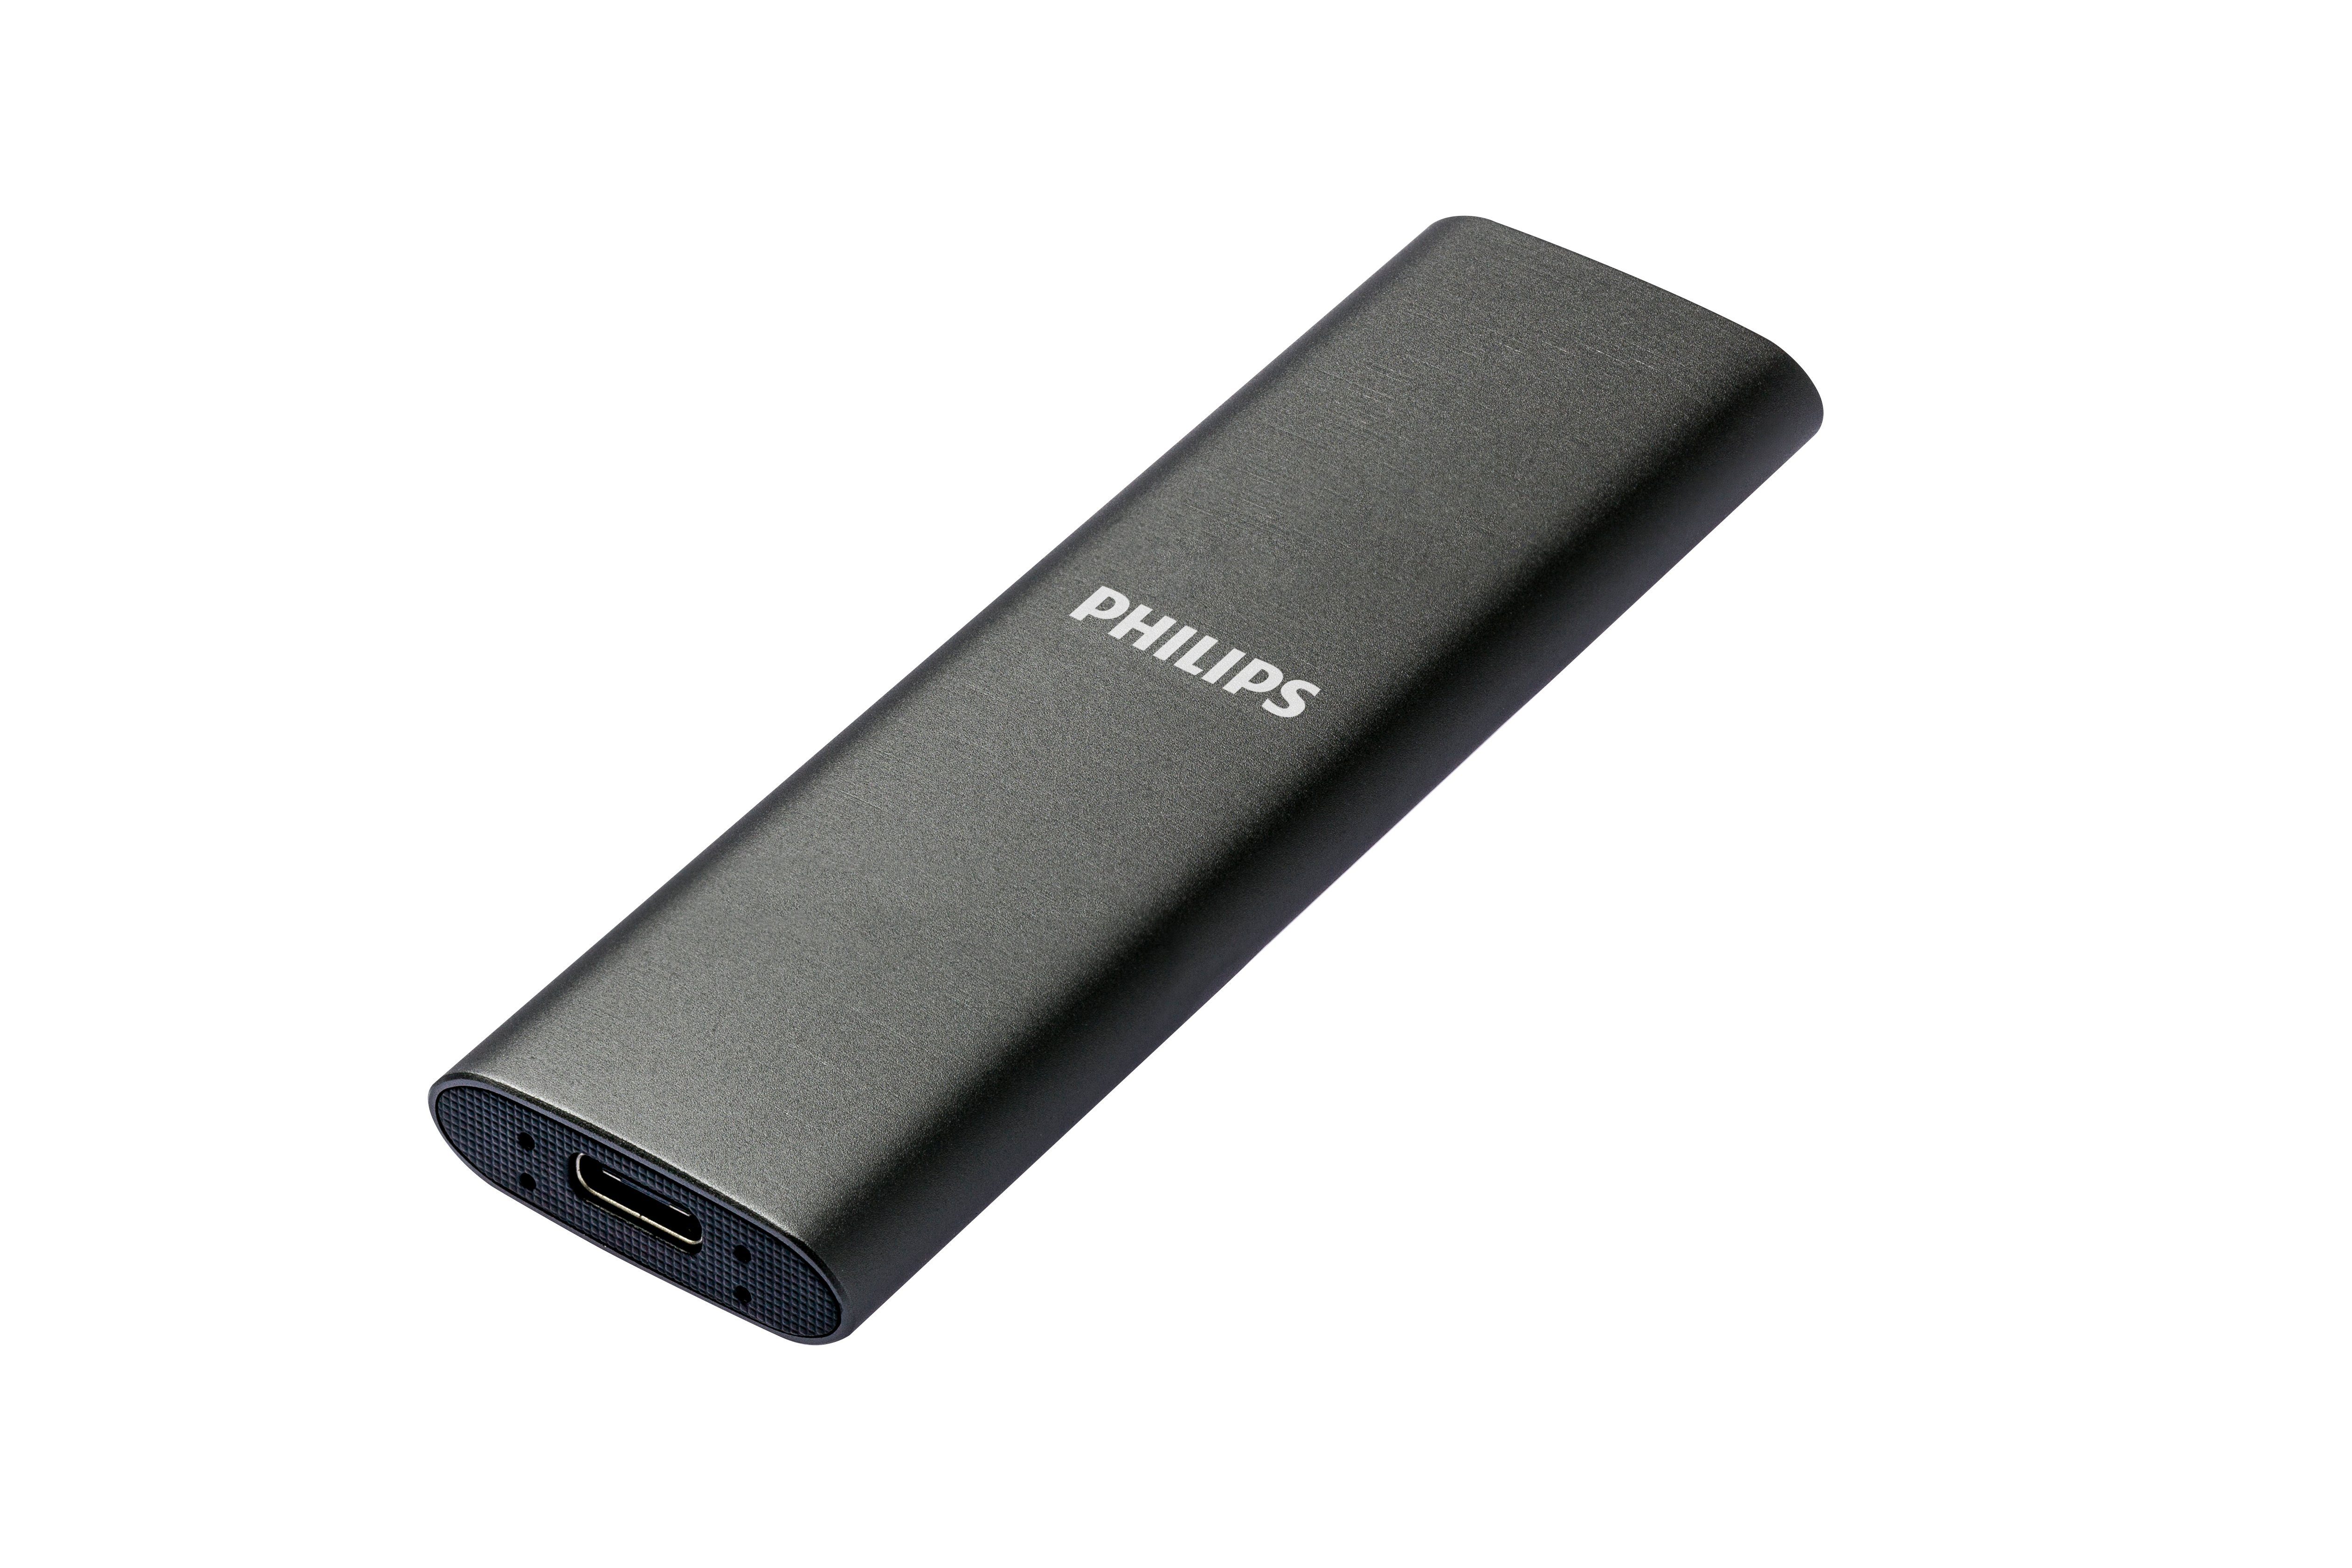 MB/S 540 Philips SSD Lesegeschwindigkeit, SATA" USB-C 520 FM50SS030P/00 externe (500GB) Speed 3.2 Ultra Schreibgeschwindigkeit, MB/S Space Grey, Aluminium,